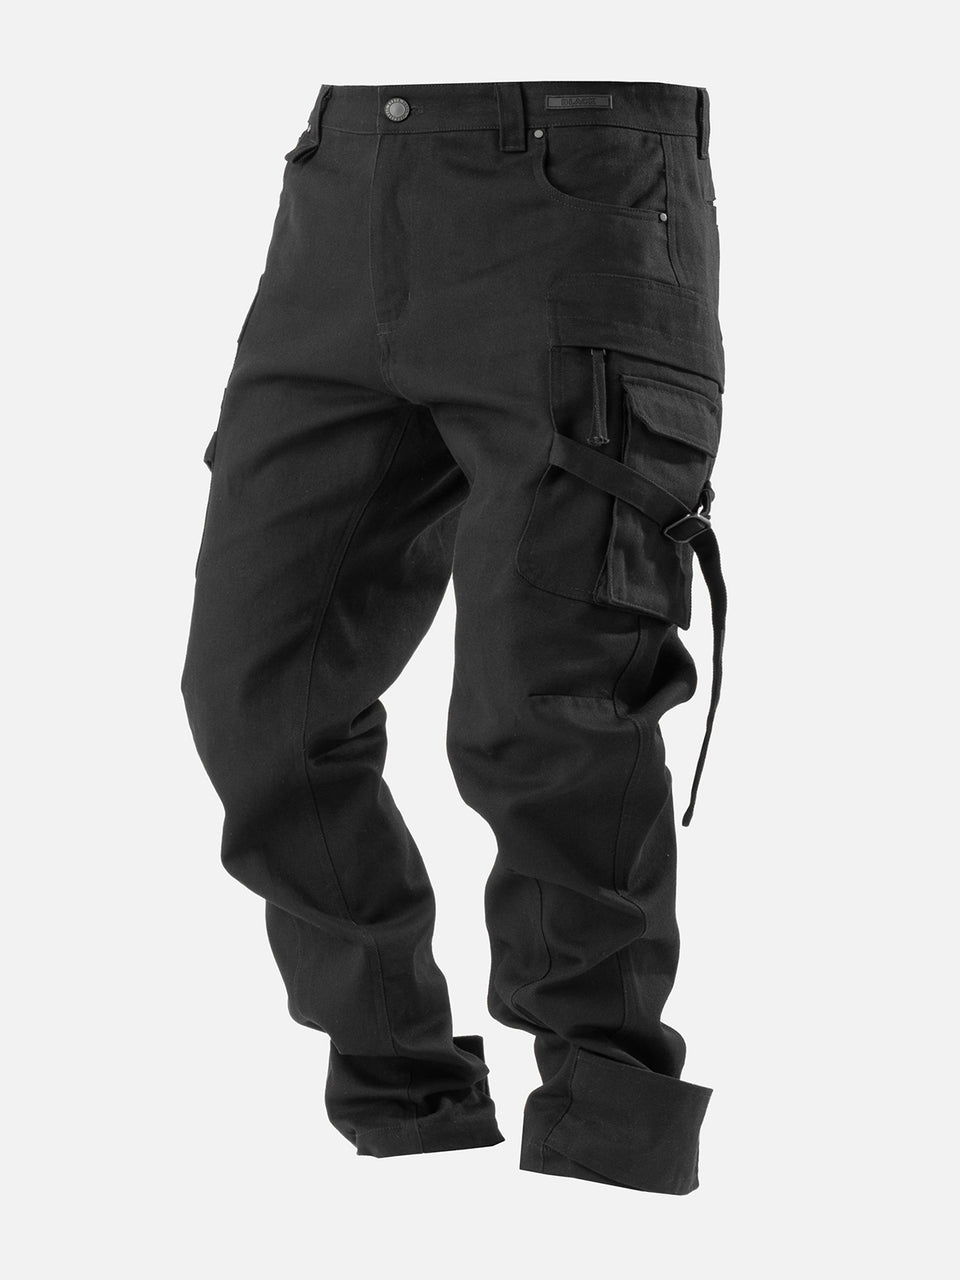 X15 Cargo Pants - Black | Blacktailor – BLACKTAILOR